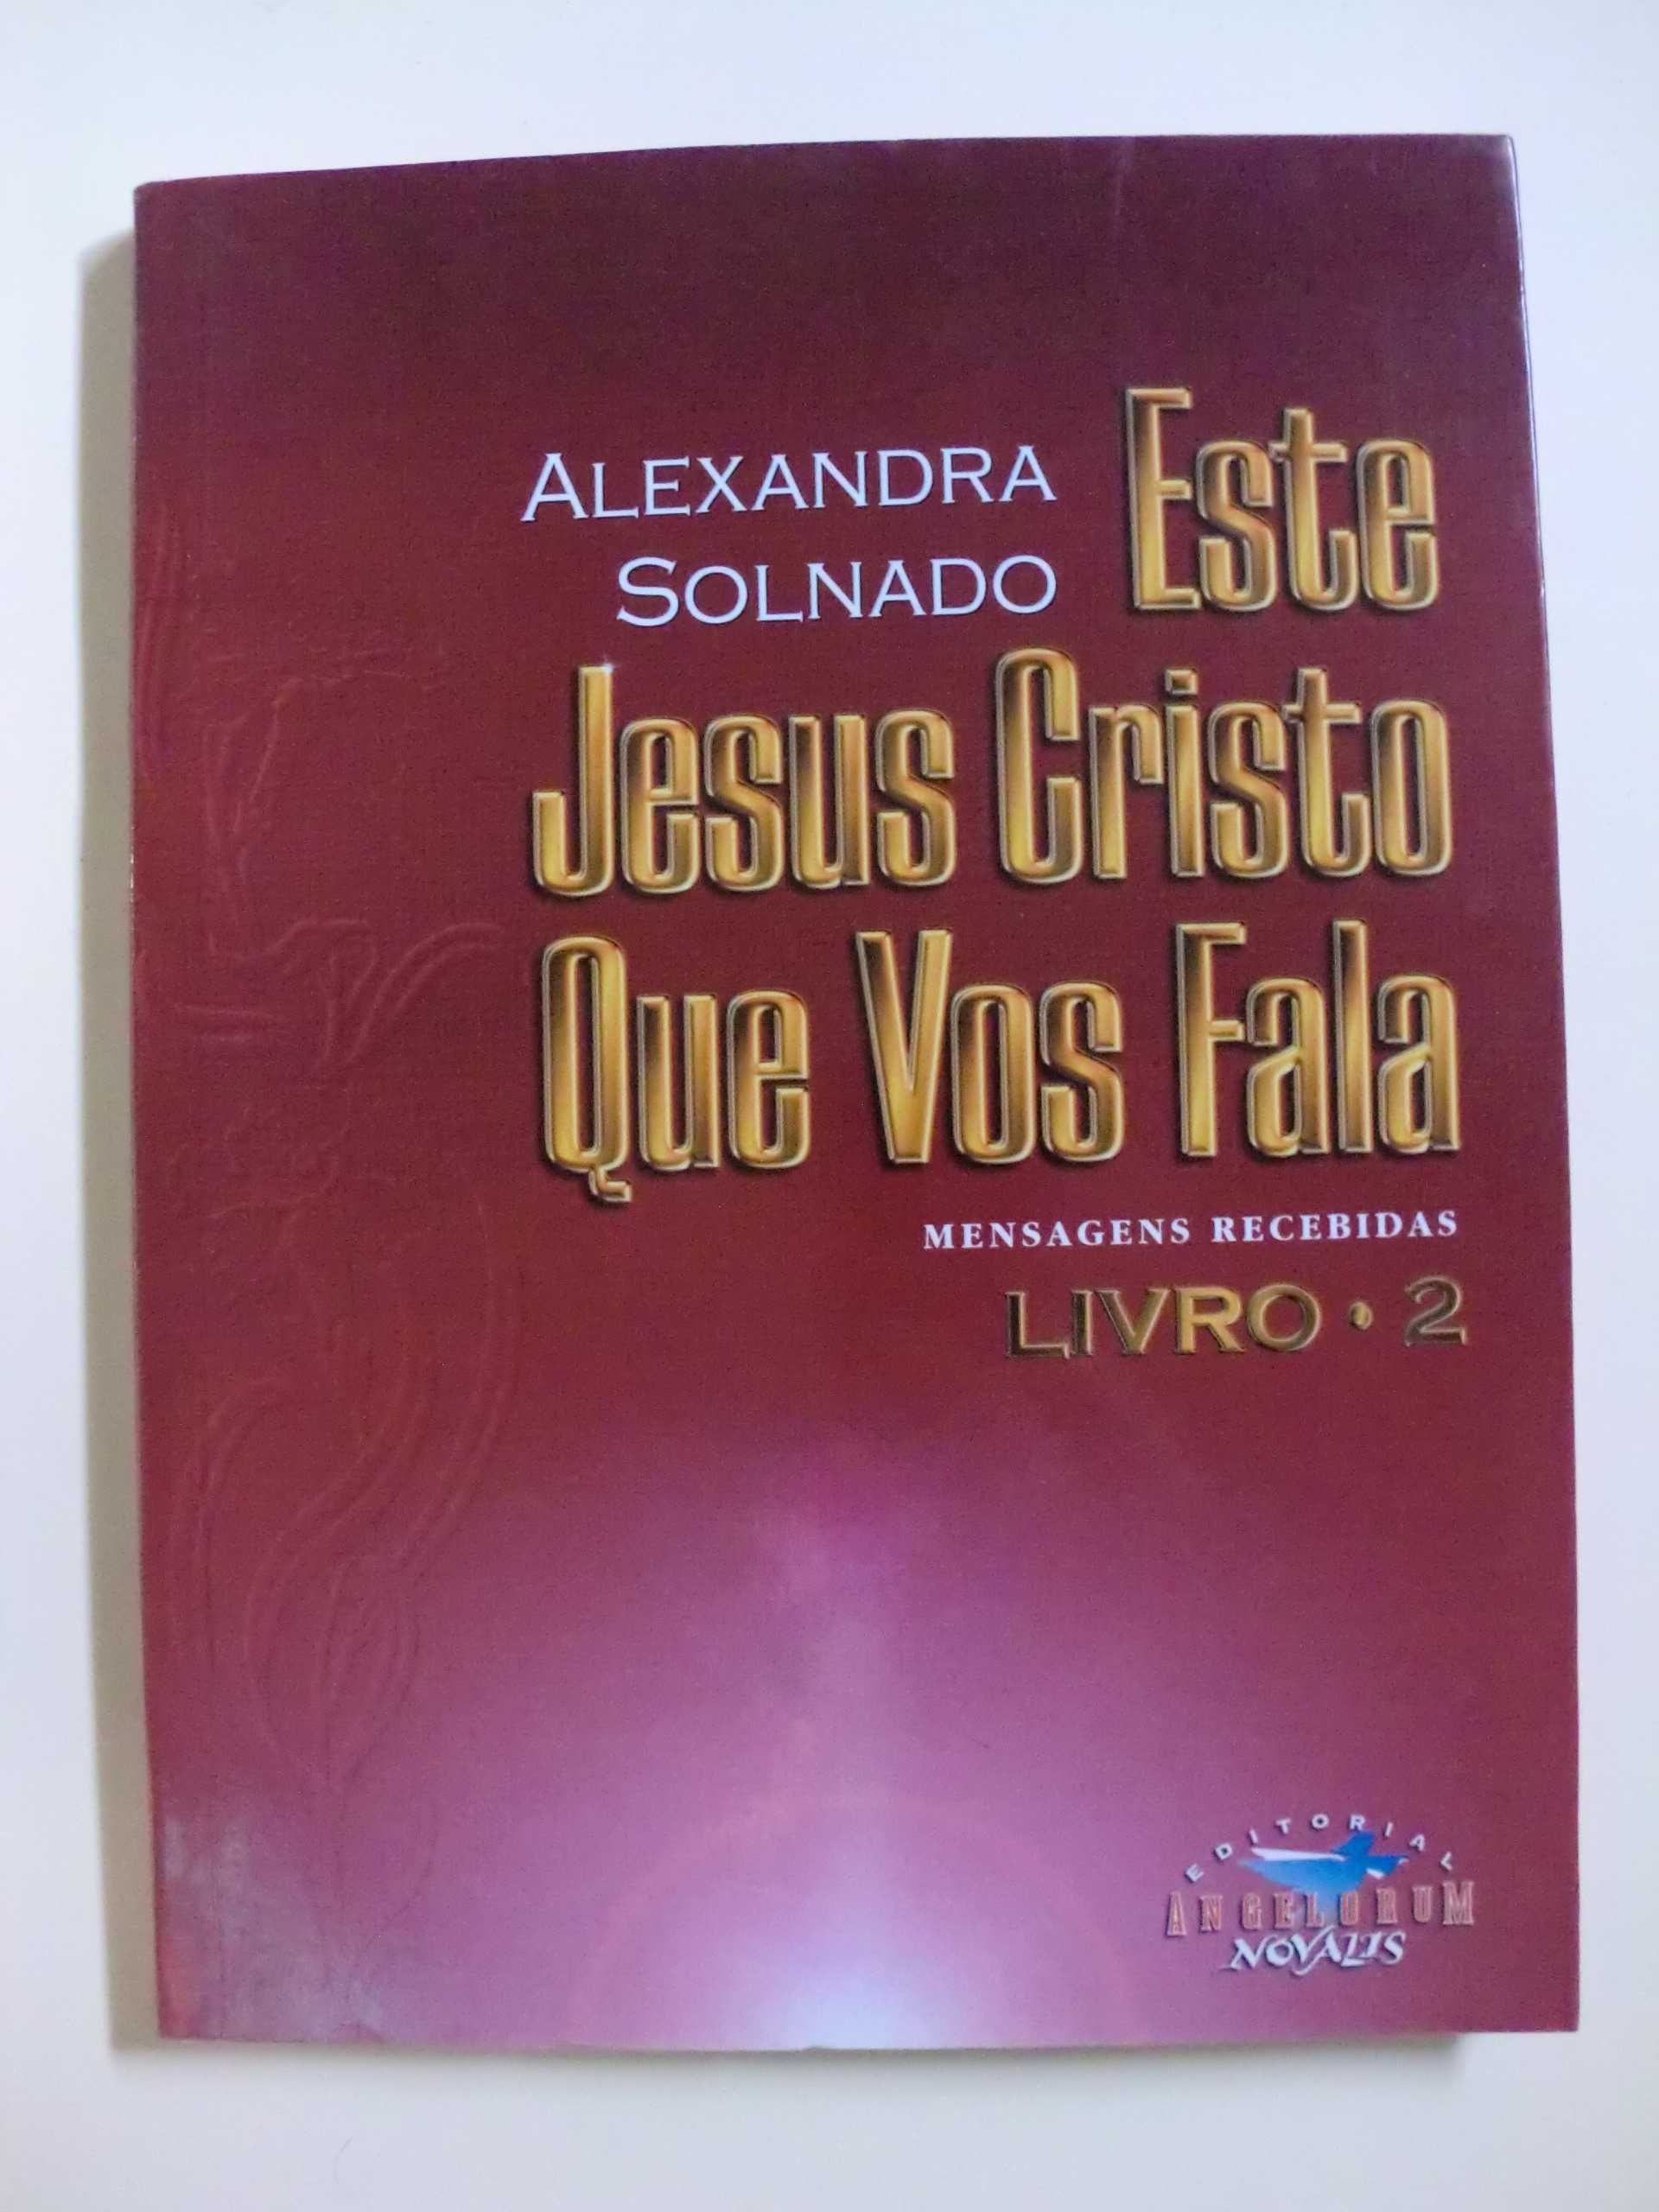 Este Jesus Cristo Que Vos Fala
de Alexandra Solnado

Livro 1 e 2